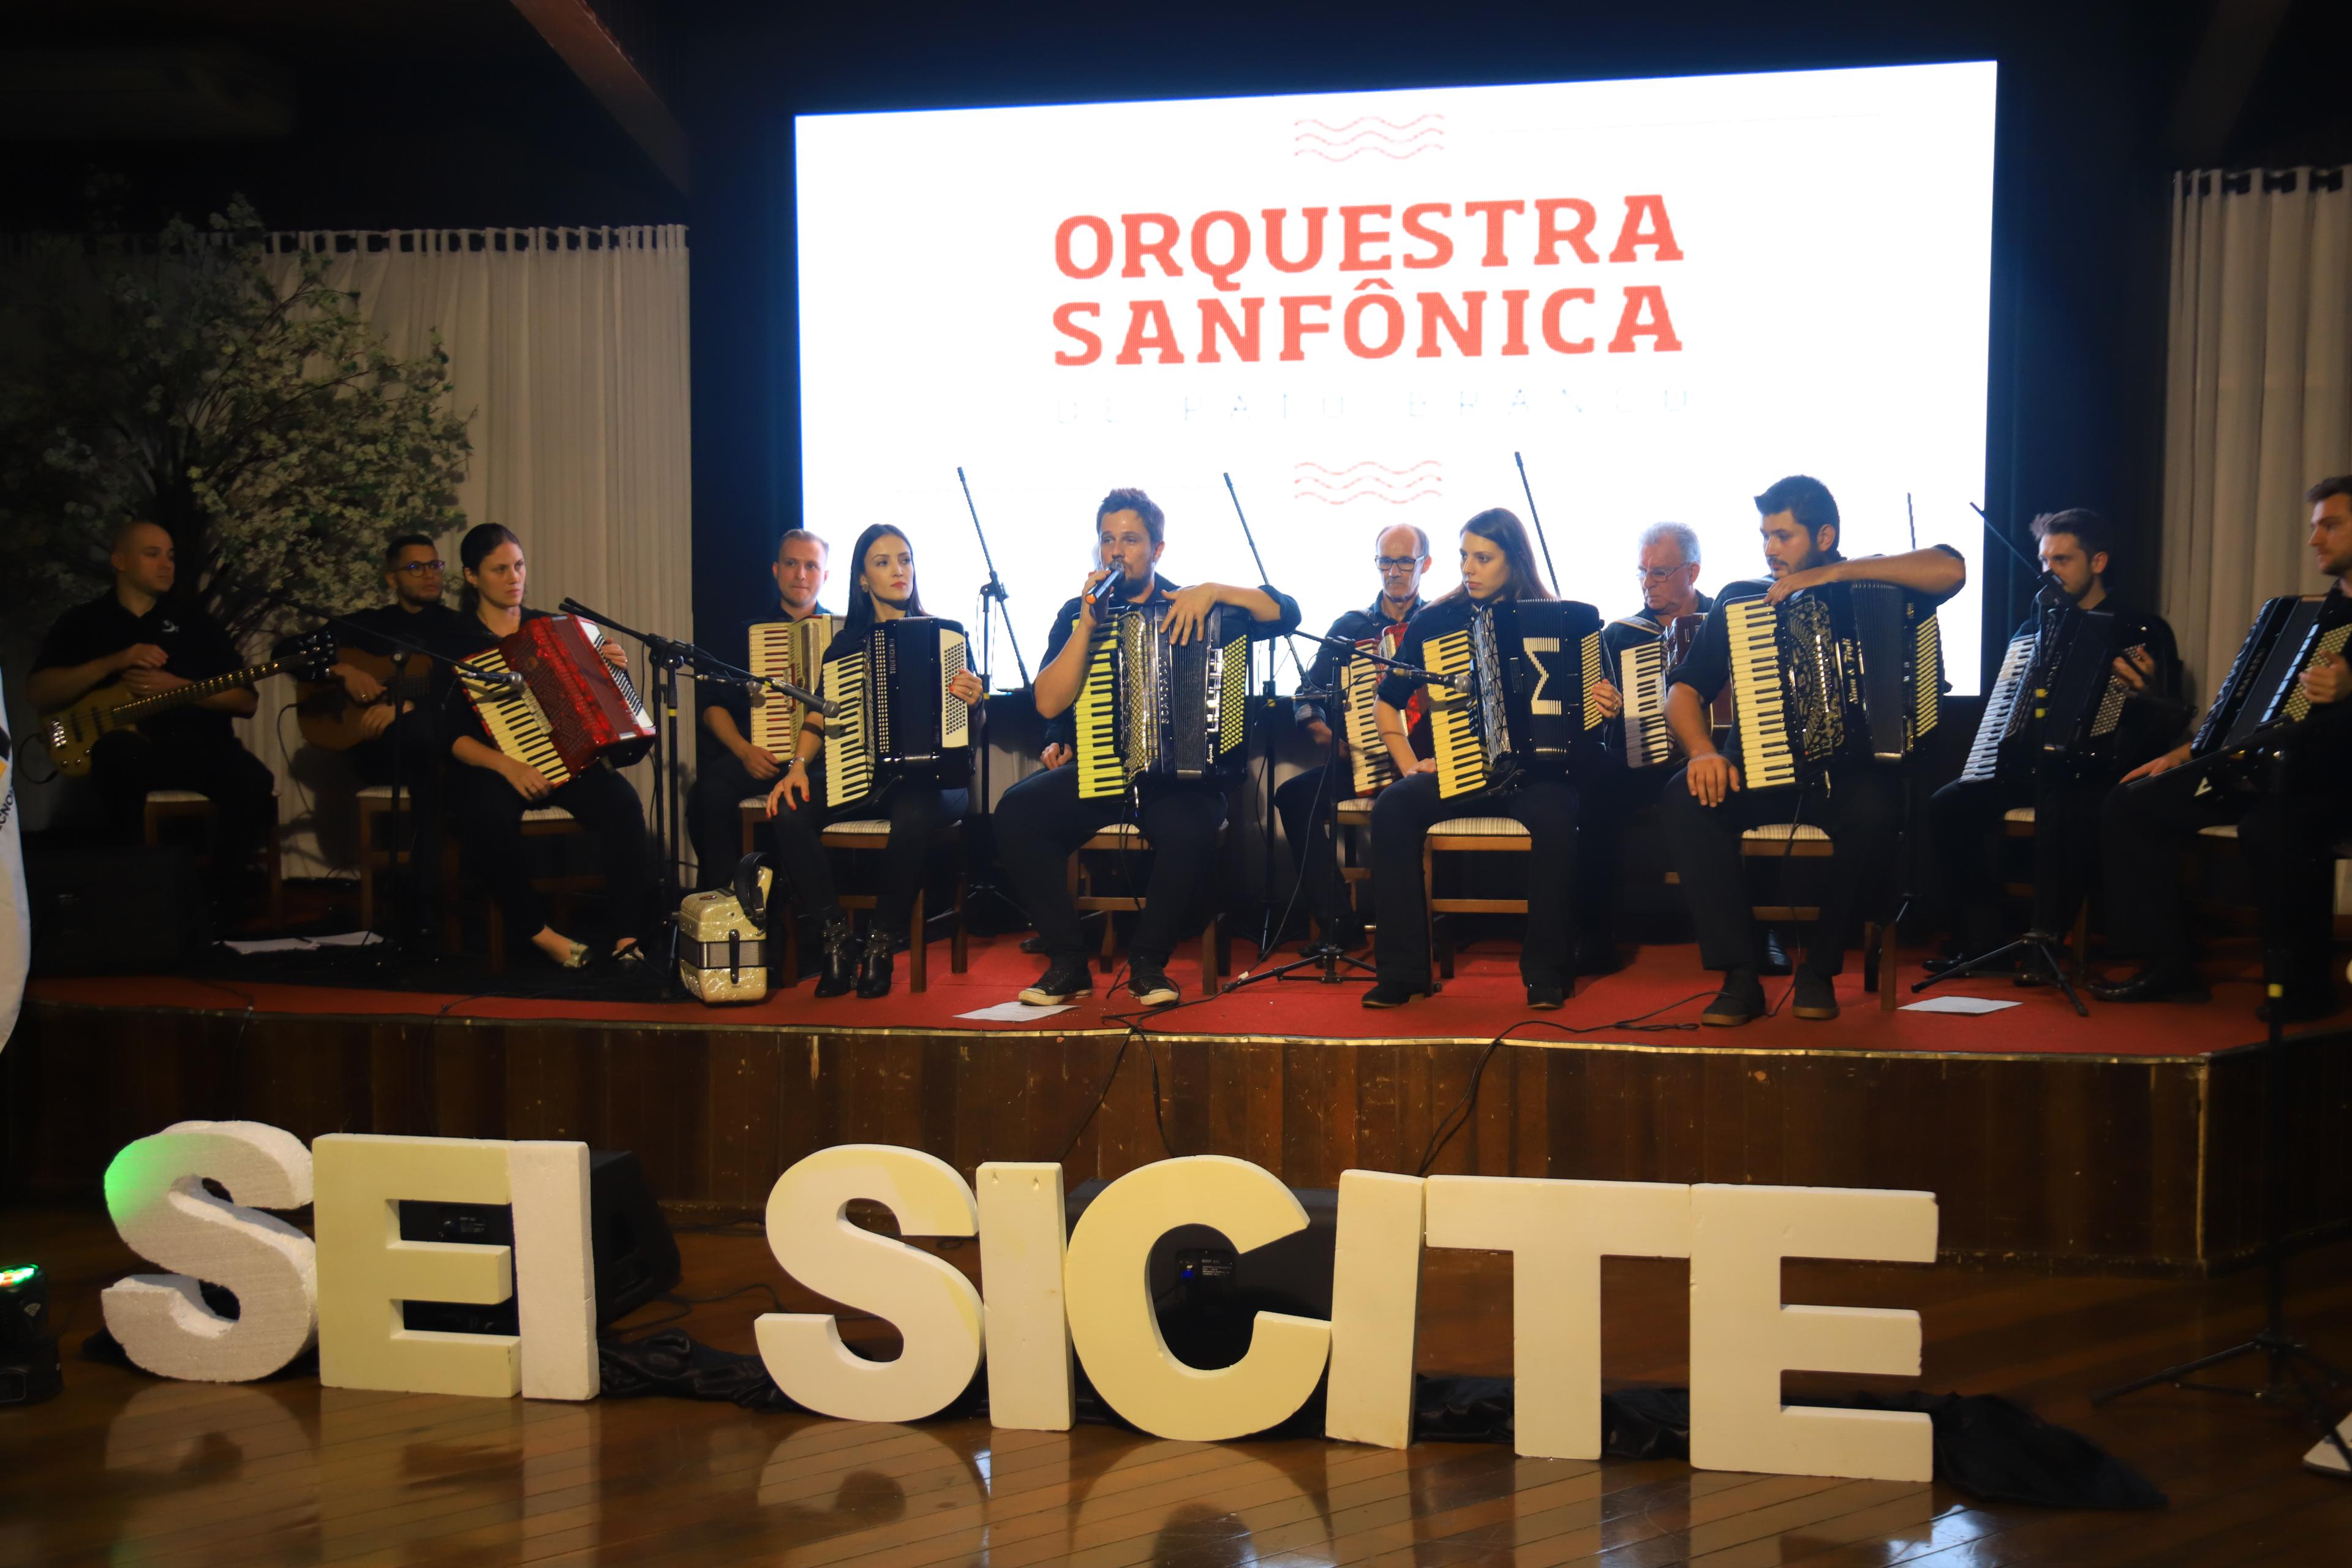 Orquestra safônica se apresentando no SEI e SICITE